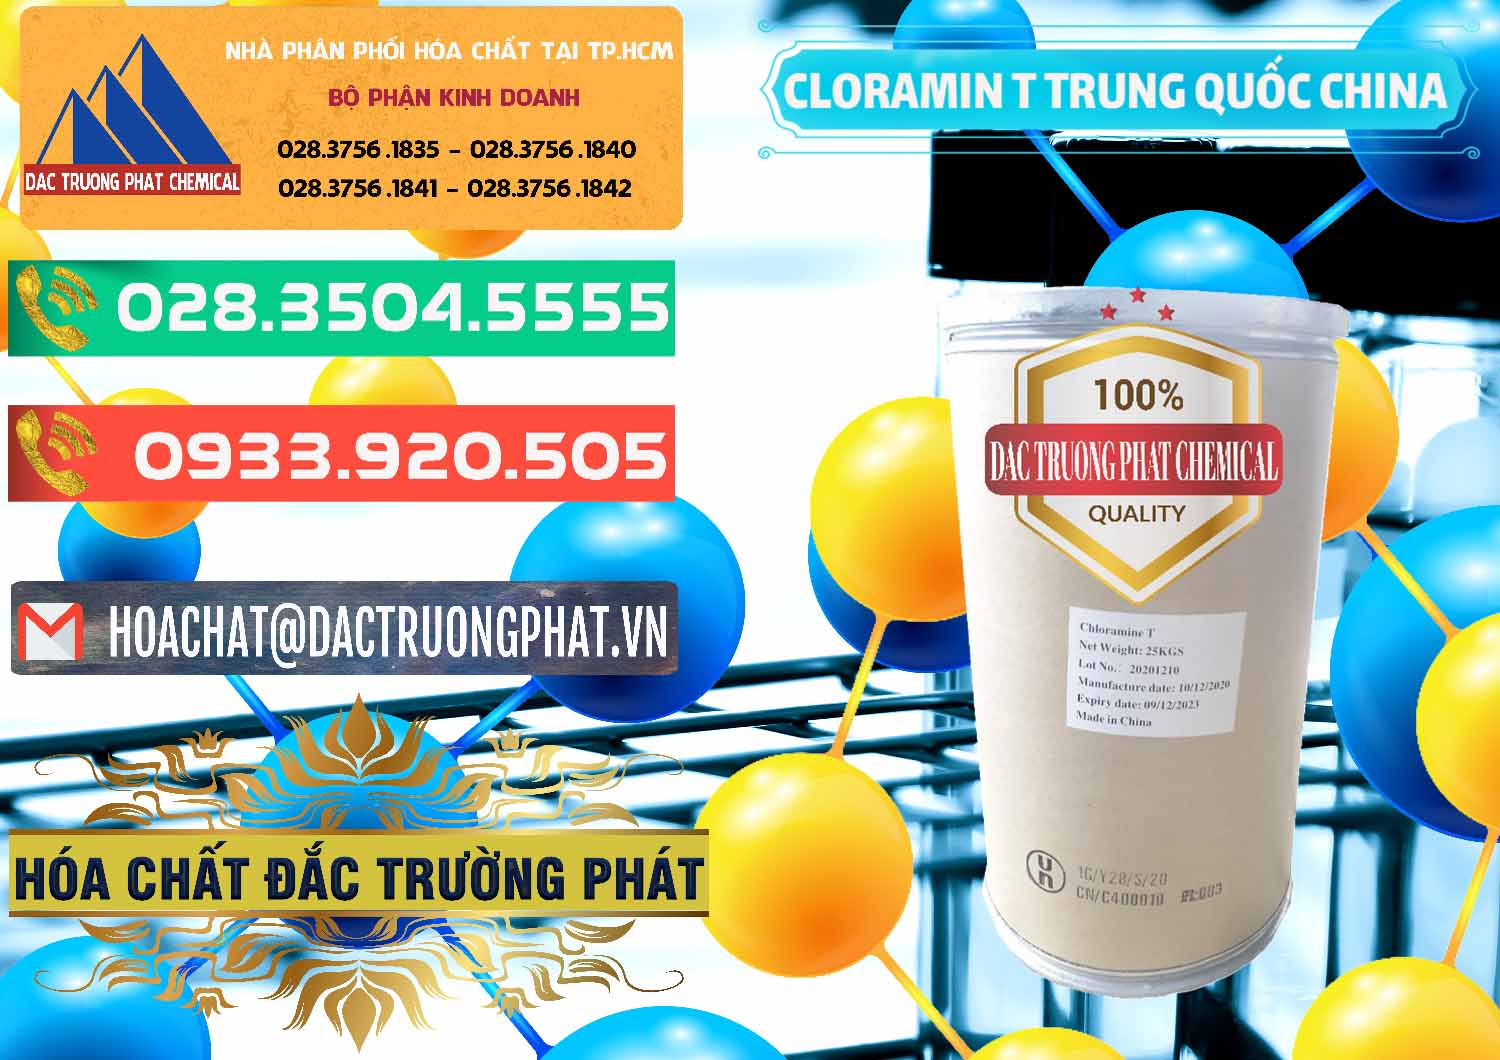 Chuyên bán _ cung ứng Cloramin T Khử Trùng, Diệt Khuẩn Trung Quốc China - 0301 - Chuyên bán _ cung cấp hóa chất tại TP.HCM - congtyhoachat.com.vn